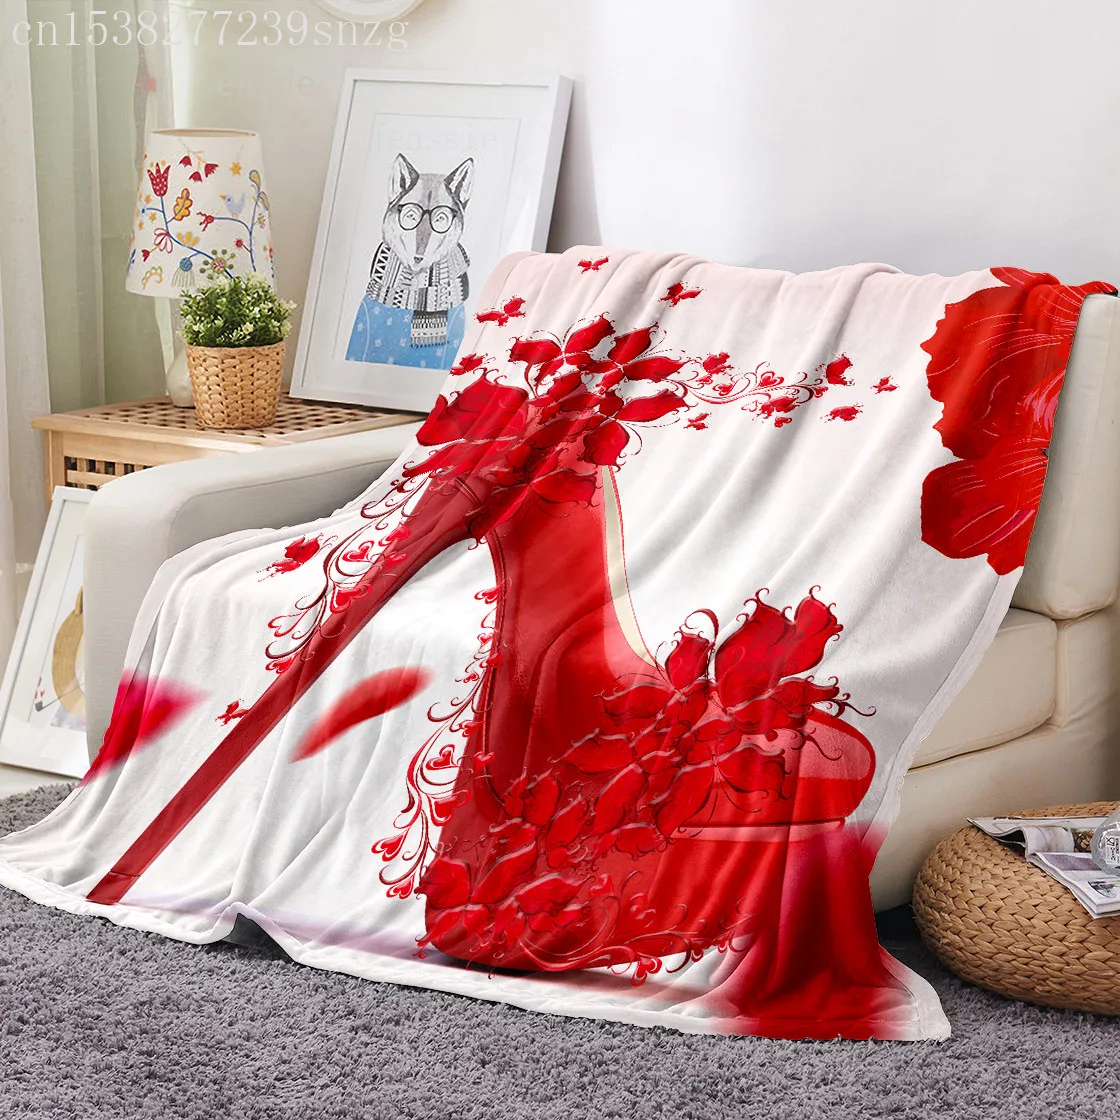 

Красное Фланелевое теплое одеяло на высоком каблуке с принтом летучая мышь кораллового цвета диван/диван-кровать/Путешествие на самолете ж...